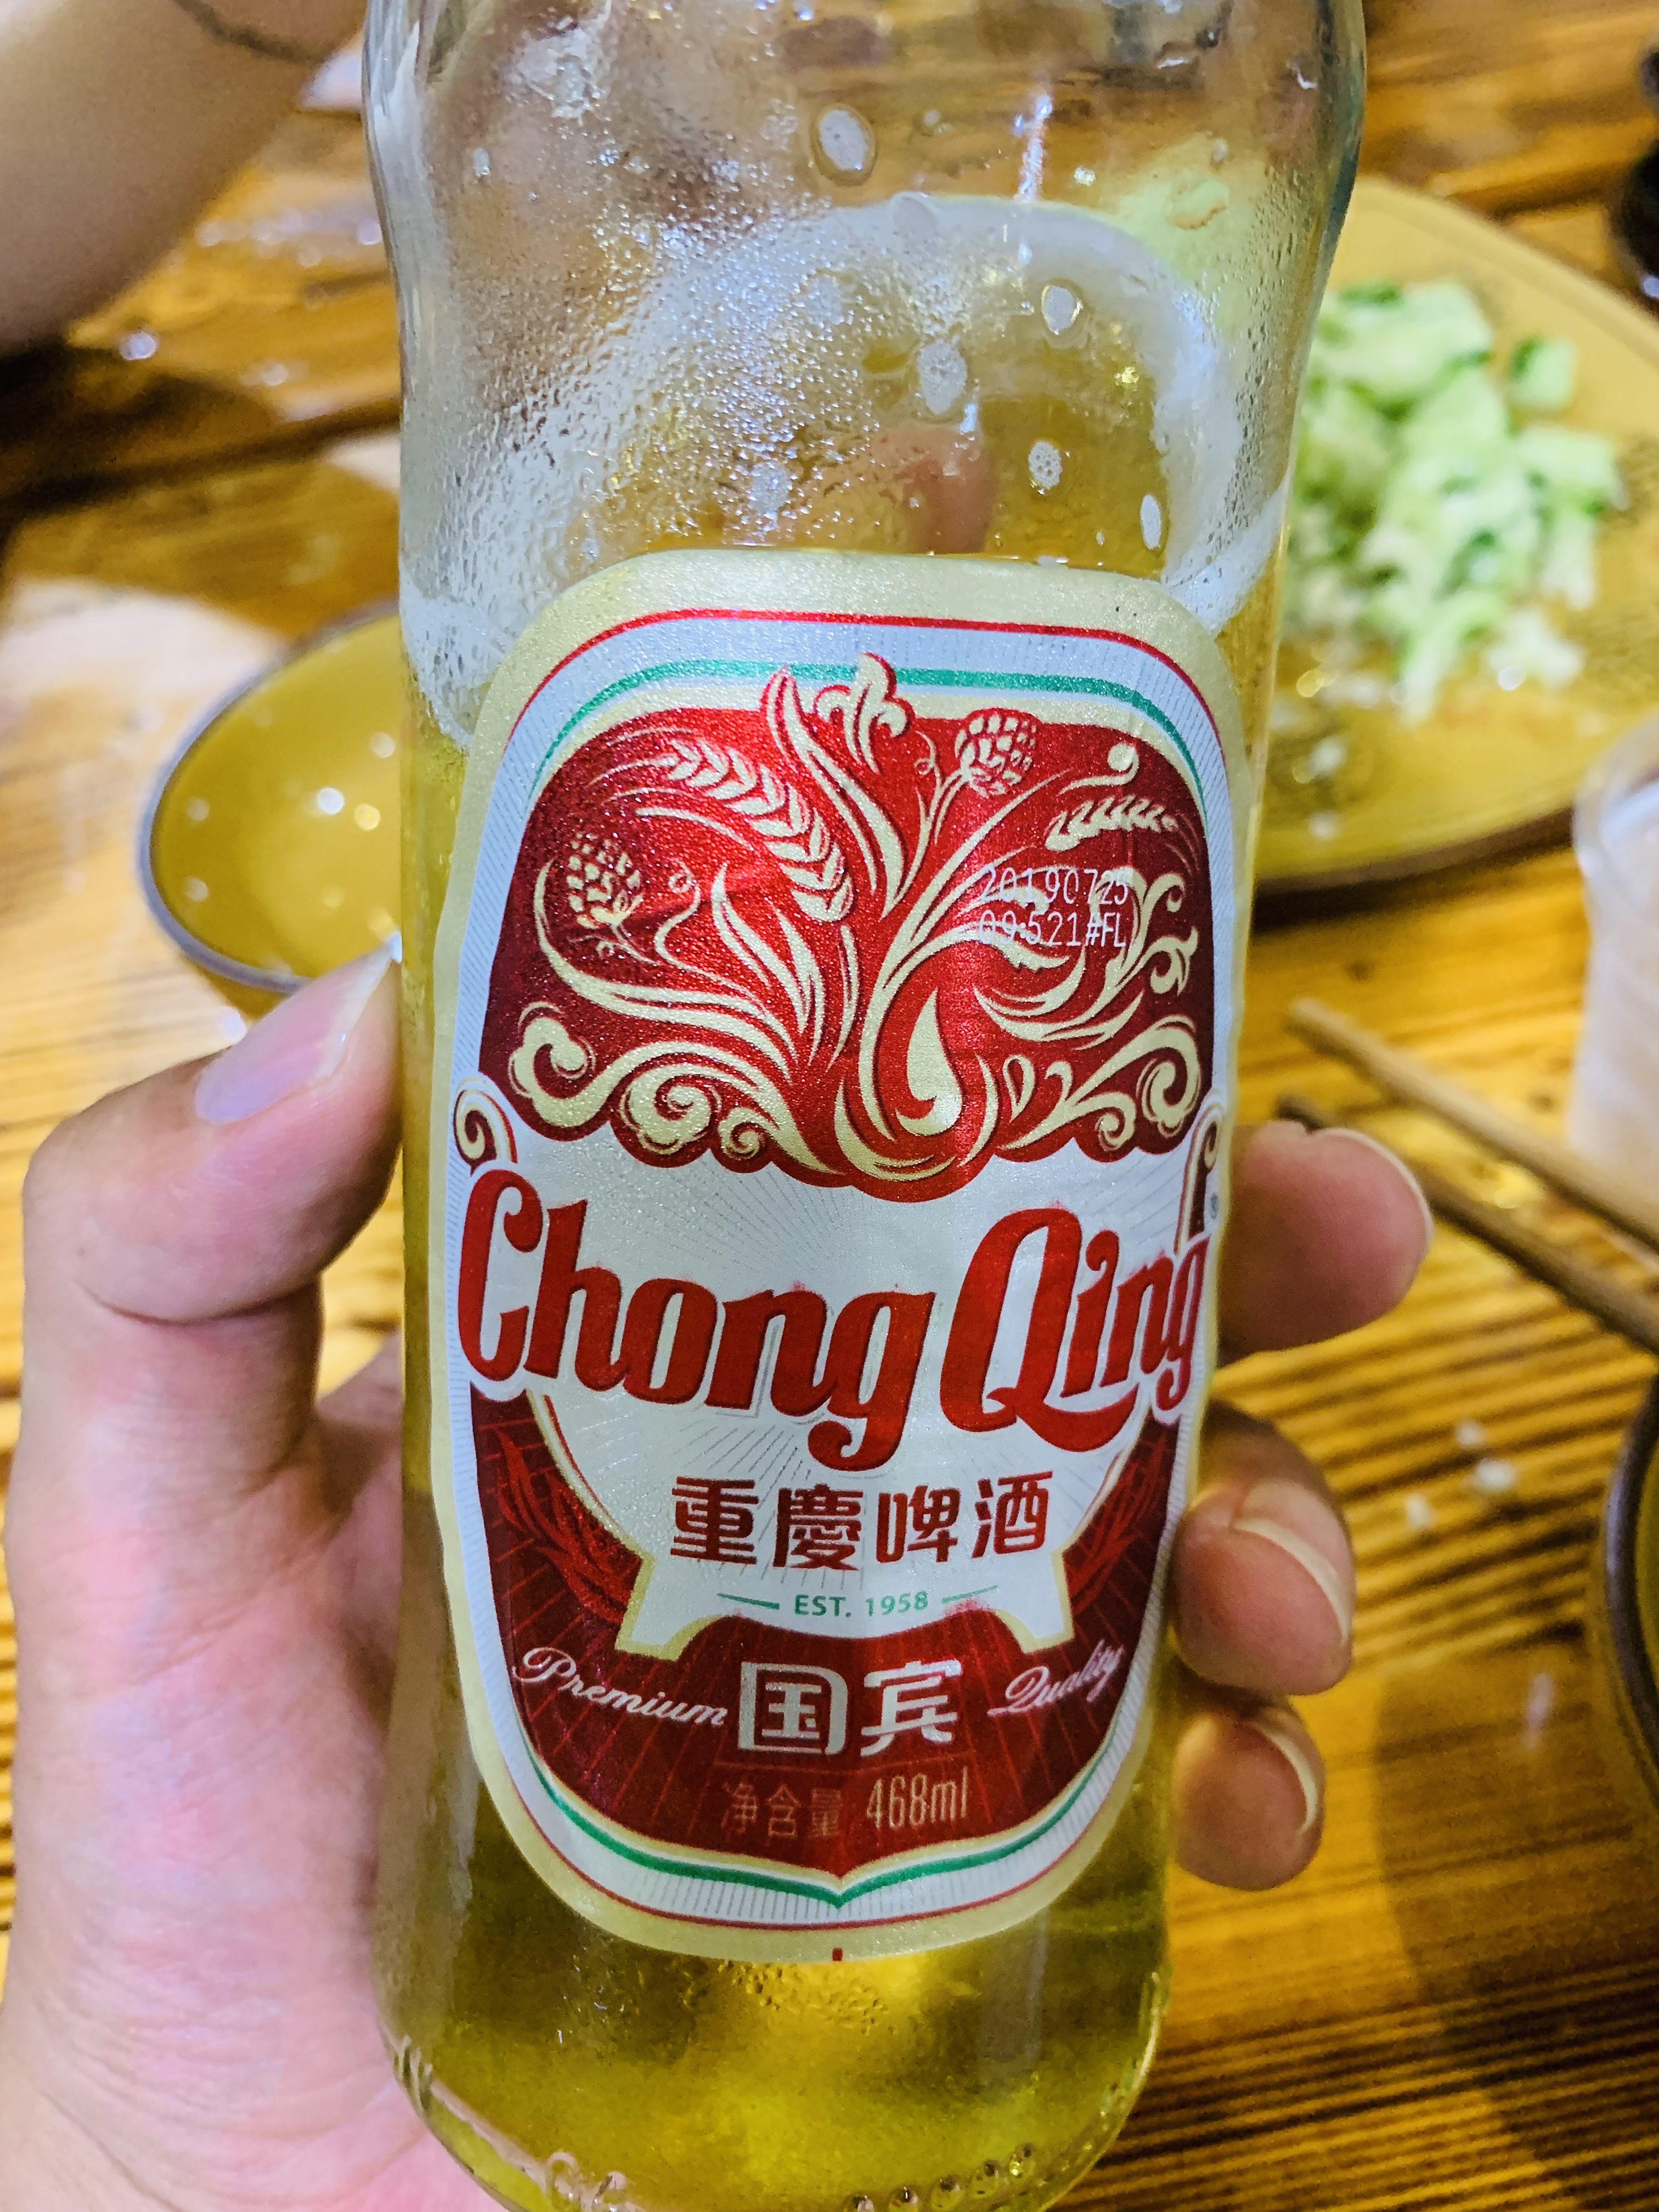 重庆啤酒真实照片图片